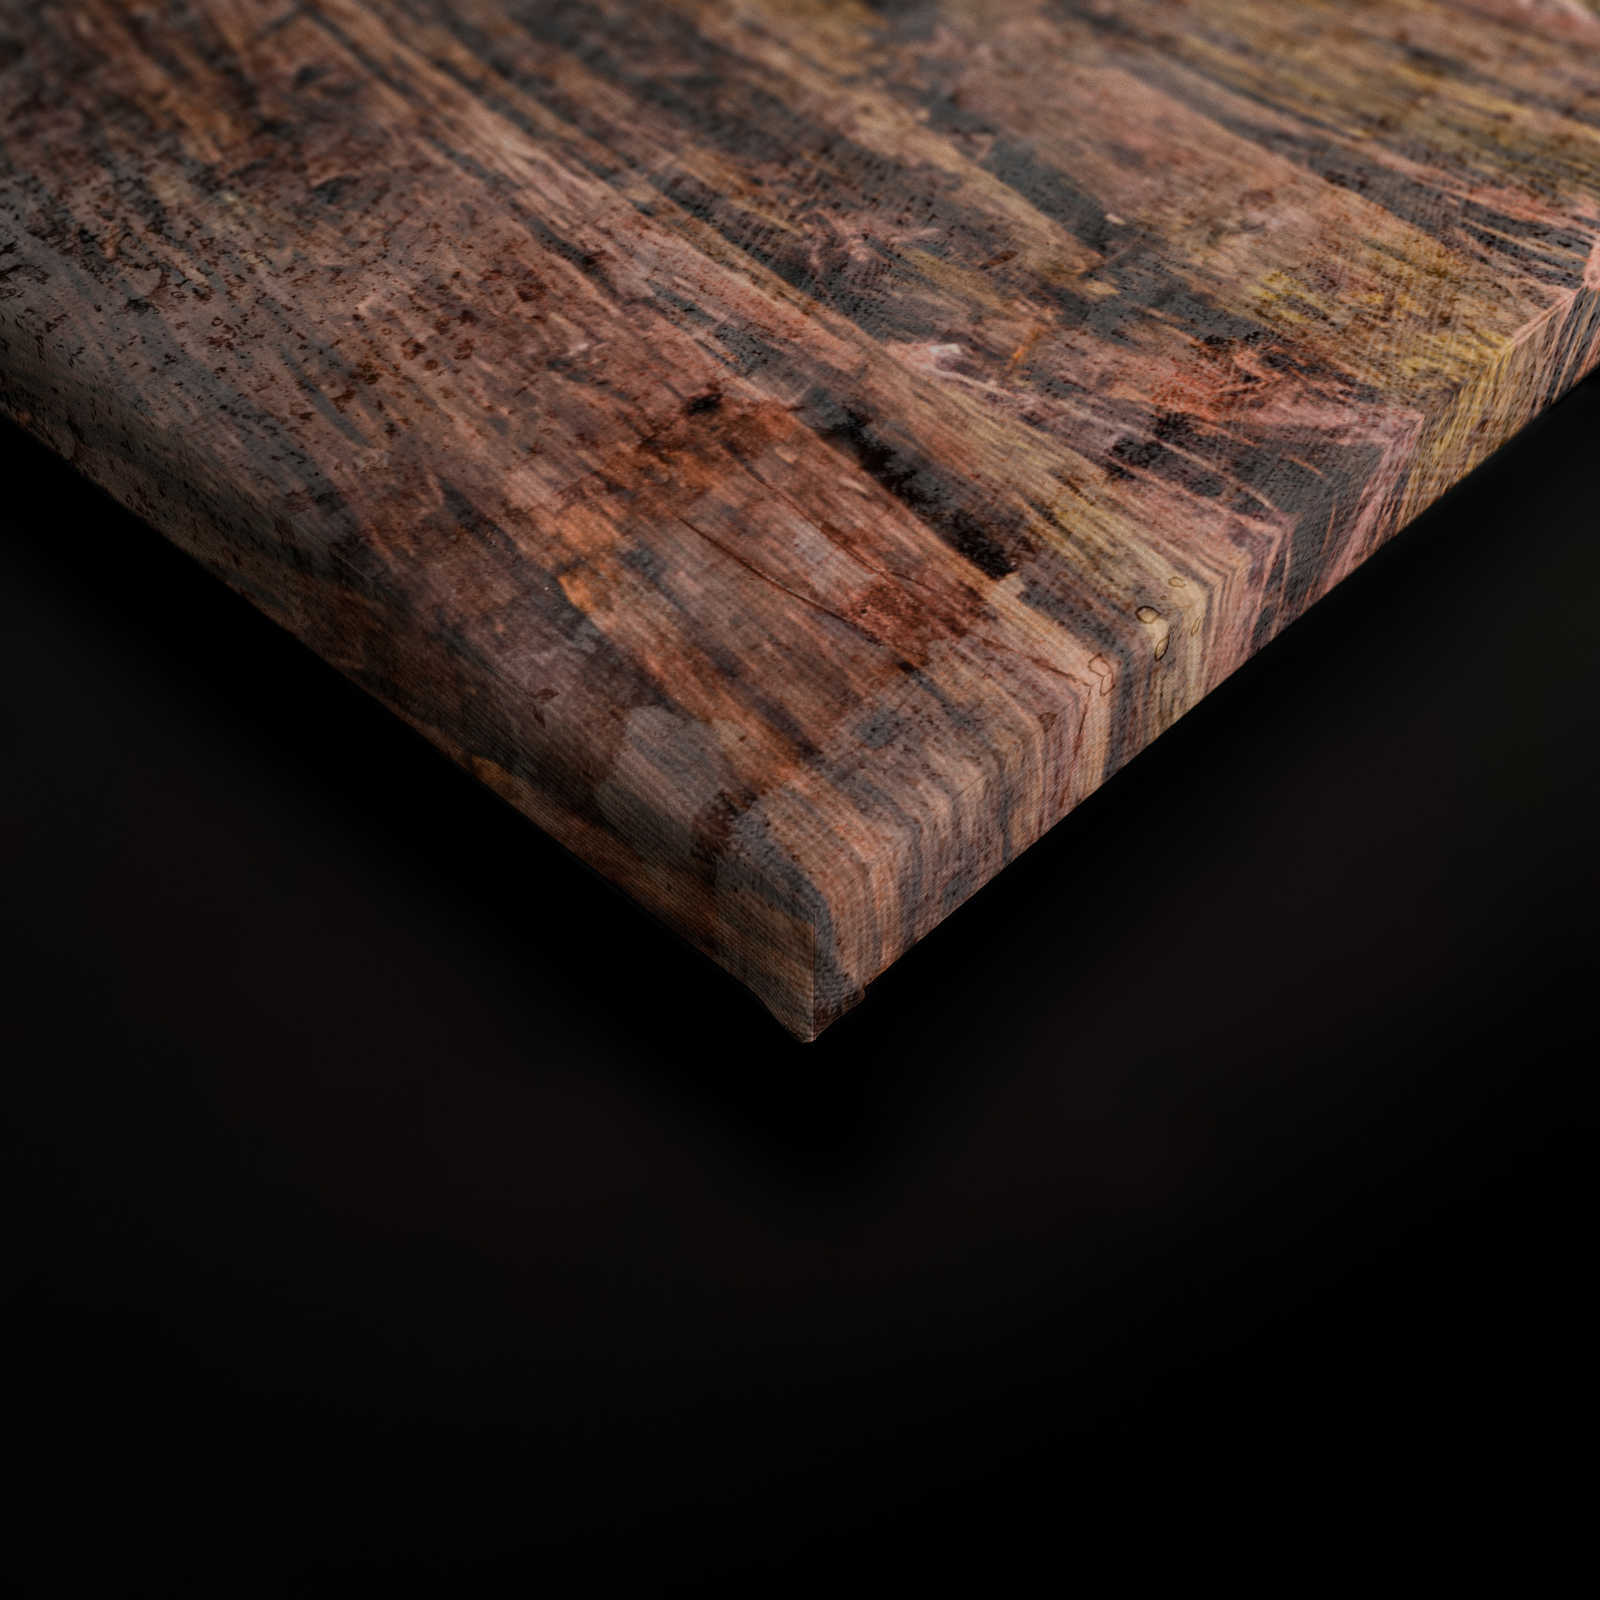             Toile avec escalier en bois à travers la forêt | marron, vert, bleu - 0,90 m x 0,60 m
        